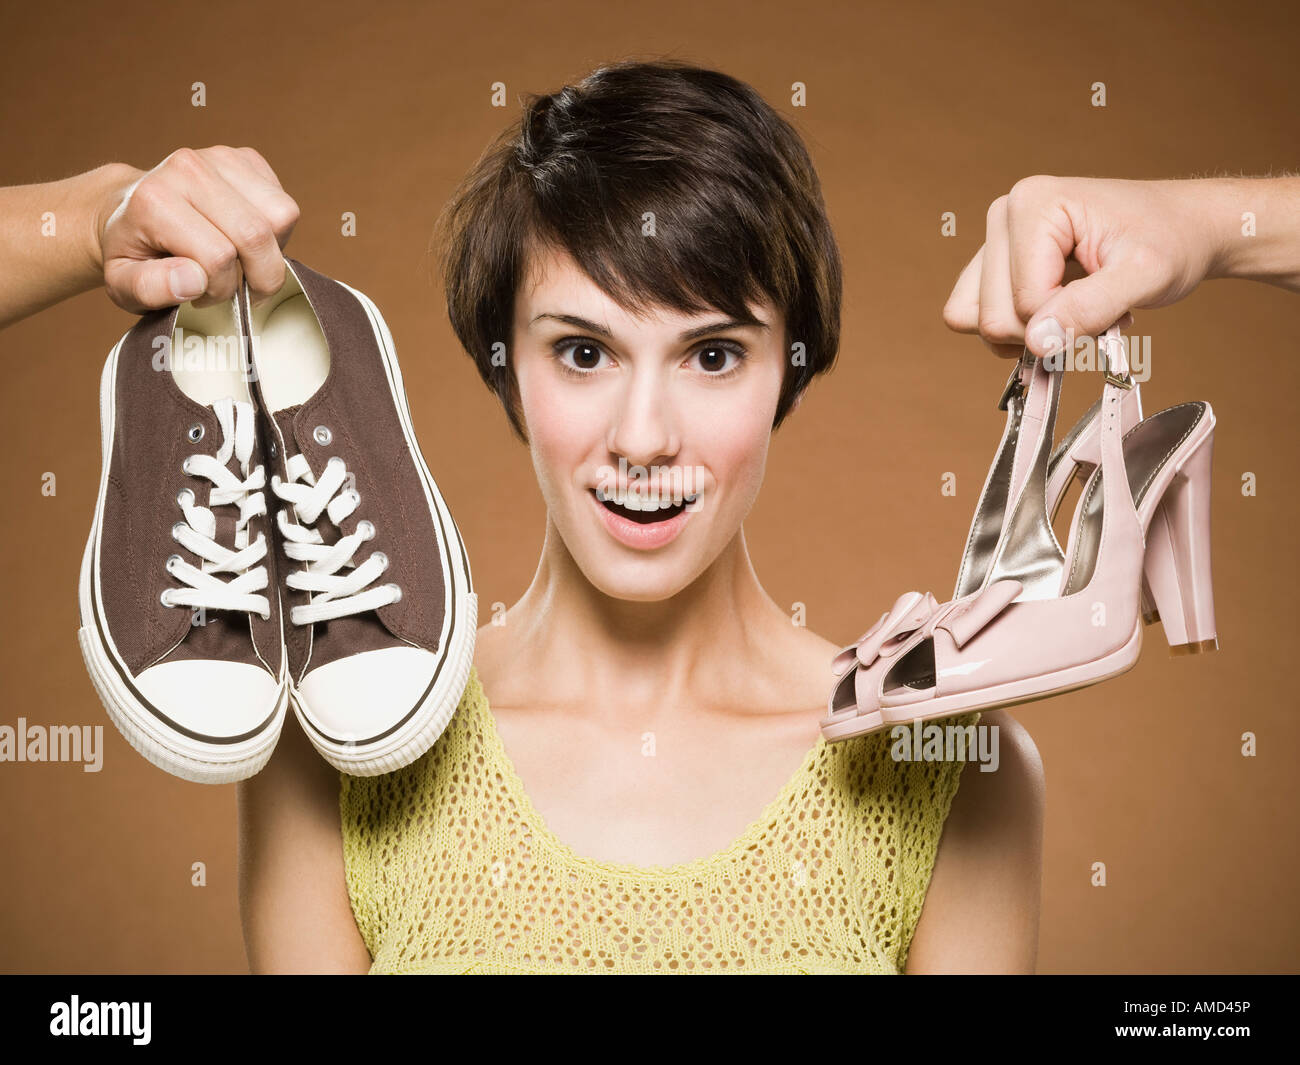 Воняют ноги и обувь. Фотосессия обуви. Неудобные туфли. Выбор обуви. Ноги в обуви.